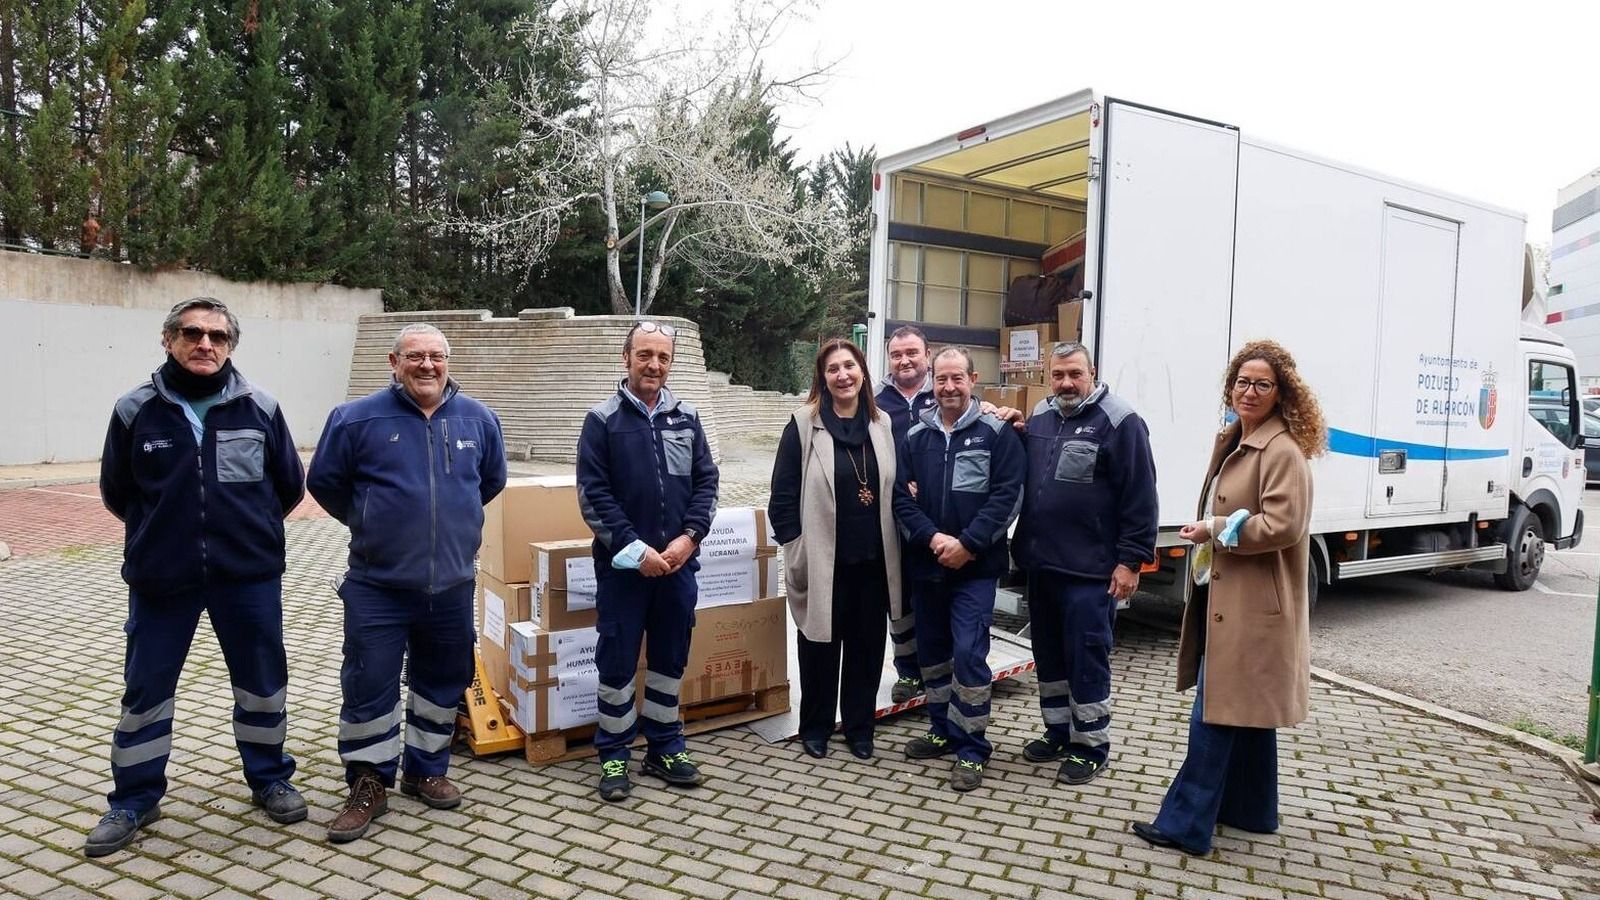 Nuevo envío de ayuda humanitaria para Ucrania al Zendal